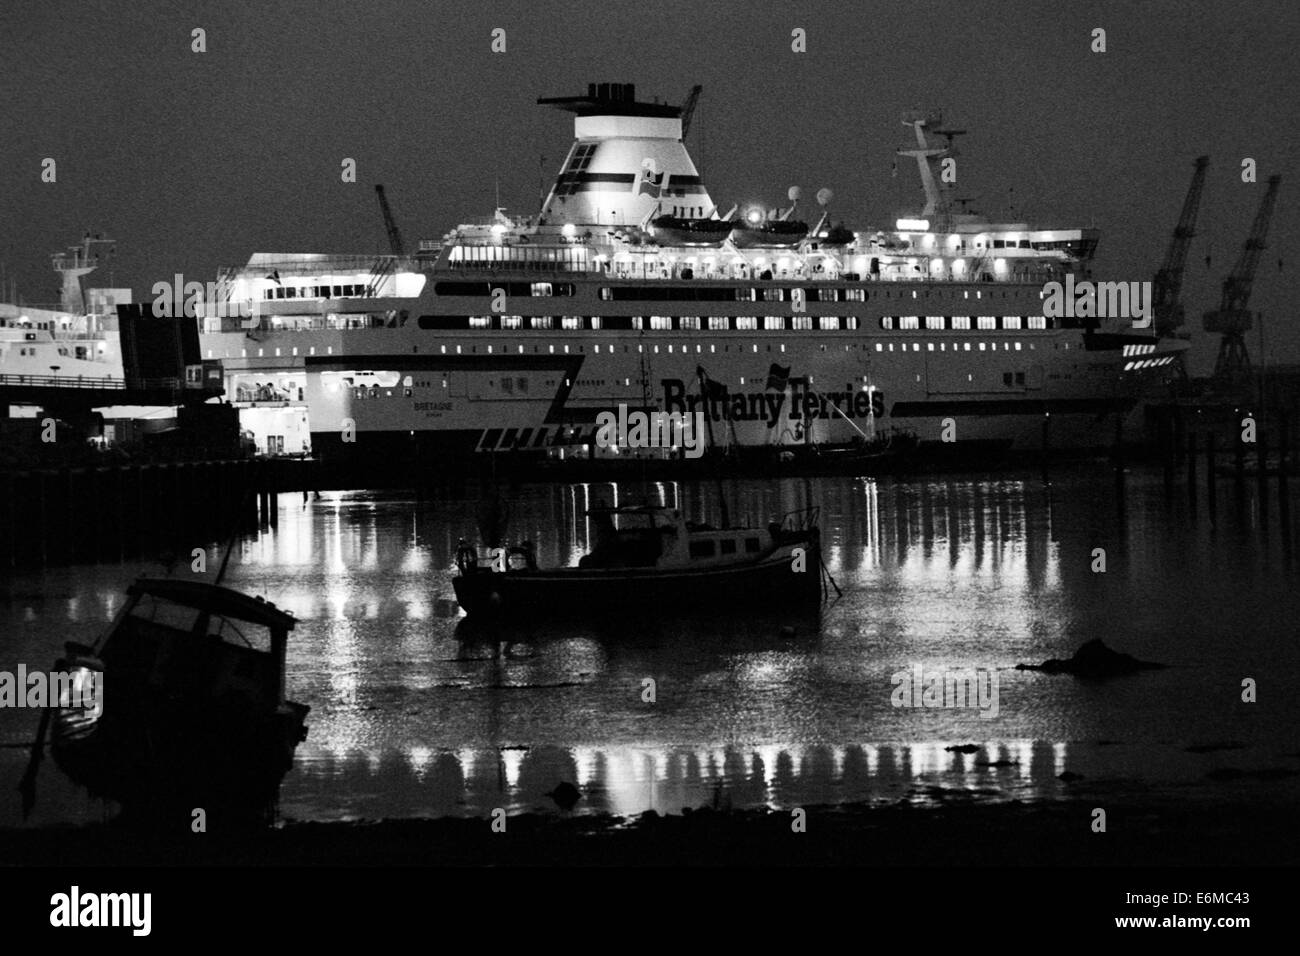 Bateau bretagne Brittany Ferries port ferry Portsmouth à la nuit england uk Banque D'Images